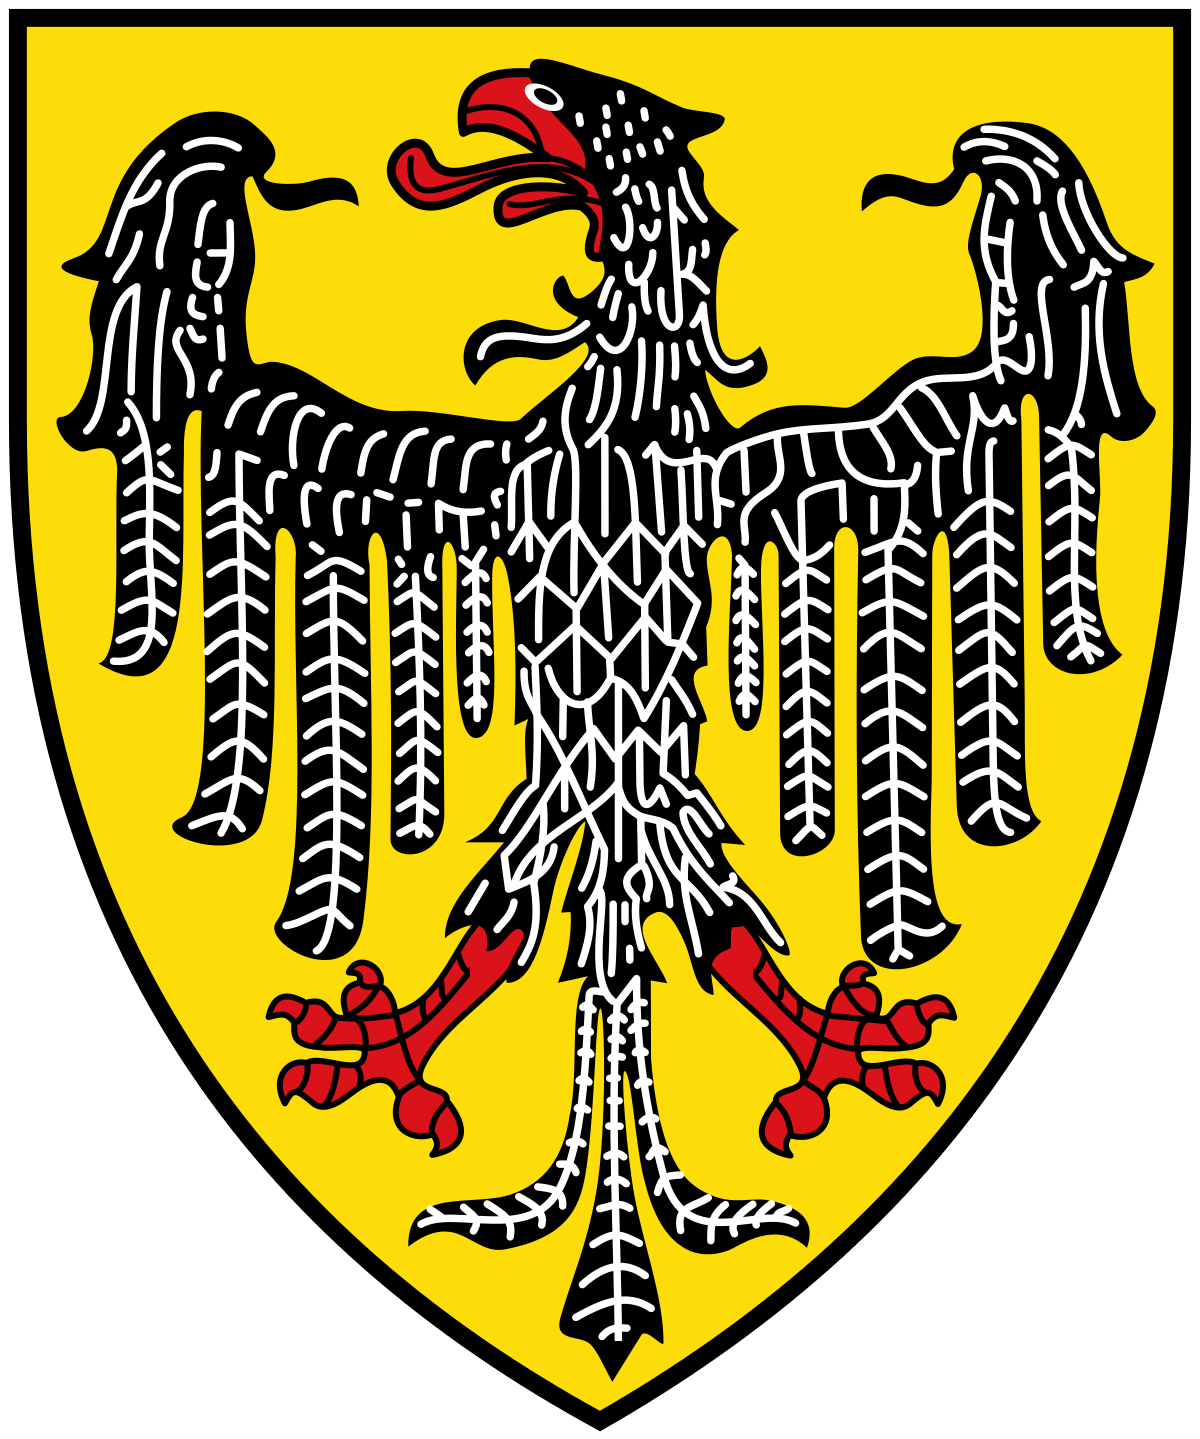 Wappen Aachen